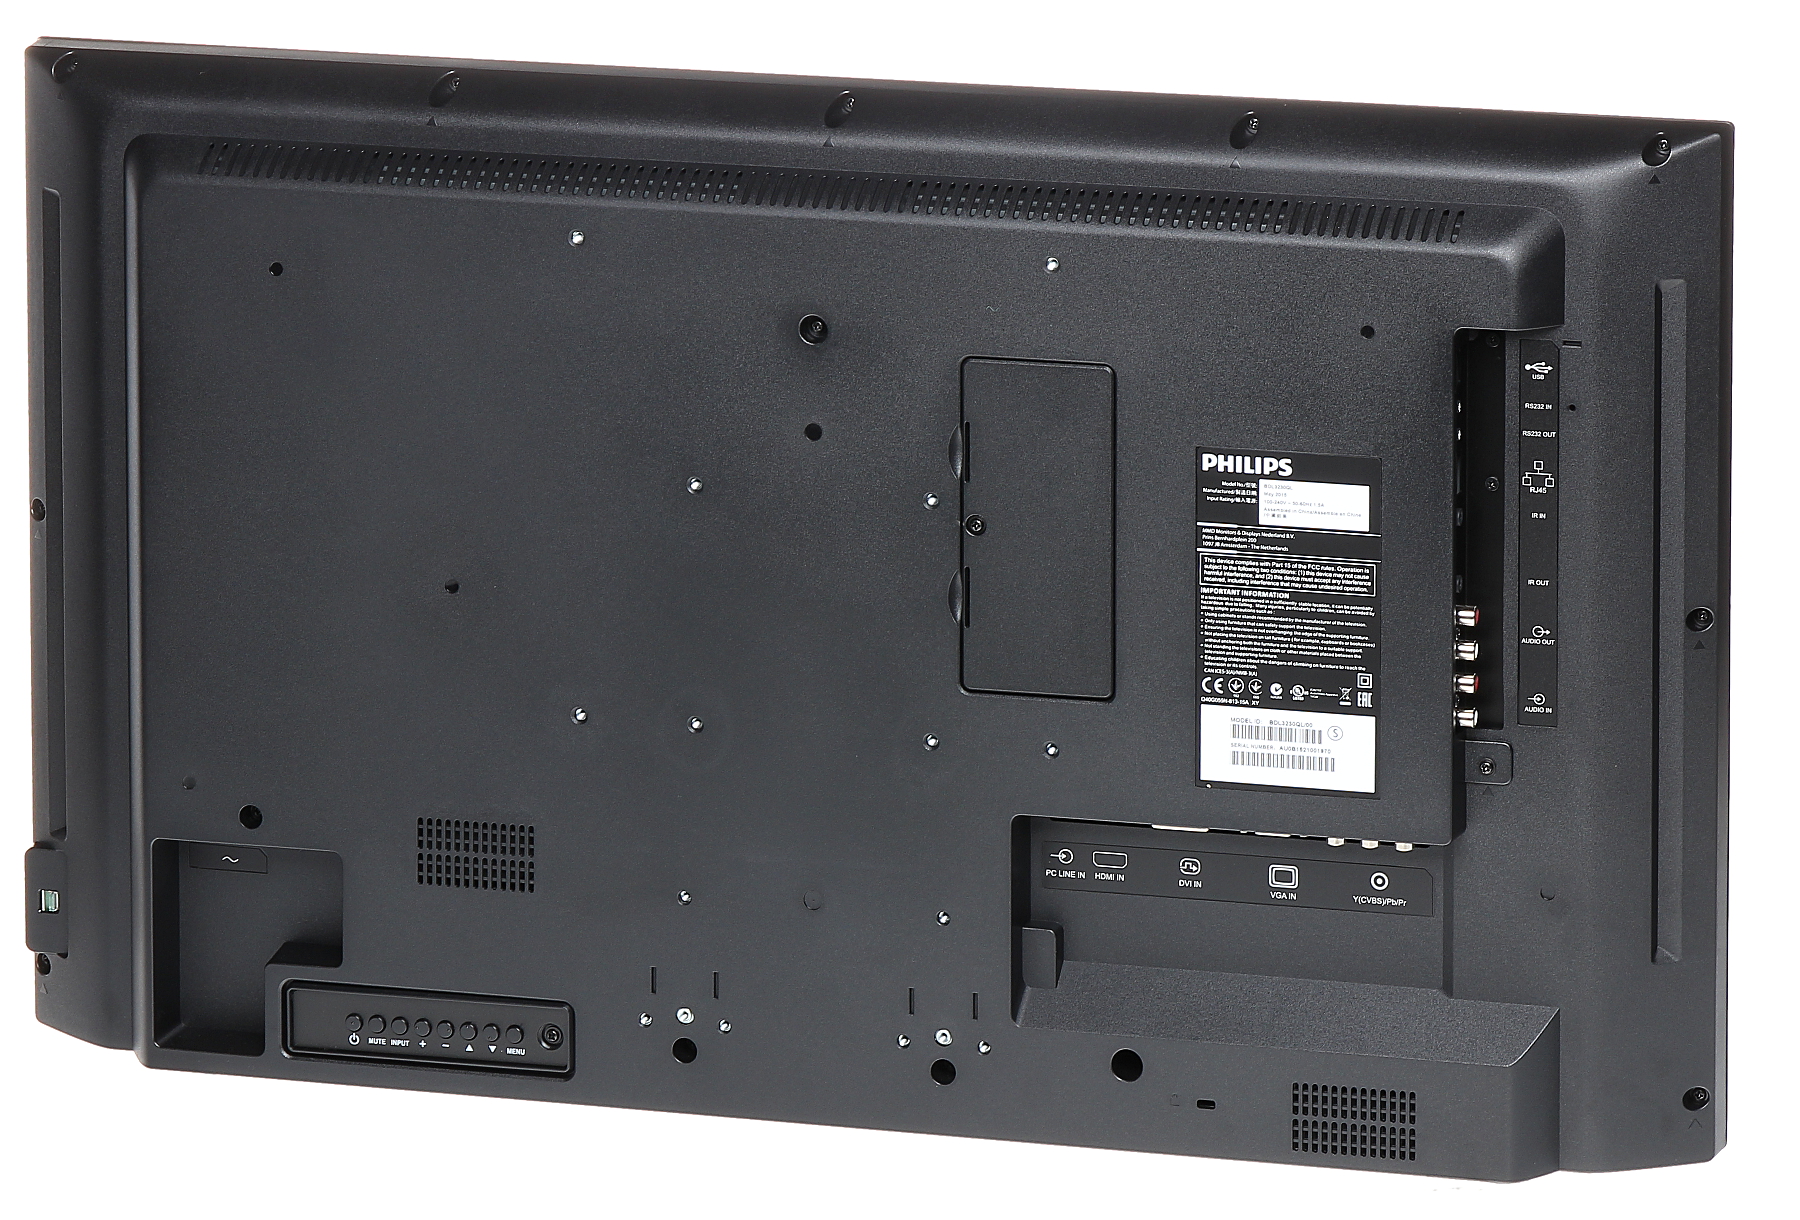 PHILIPS MONITOR HDMI, DVI, VGA, CVBS, AUDIO PH-BDL3230... - LCD Monitors -  Delta